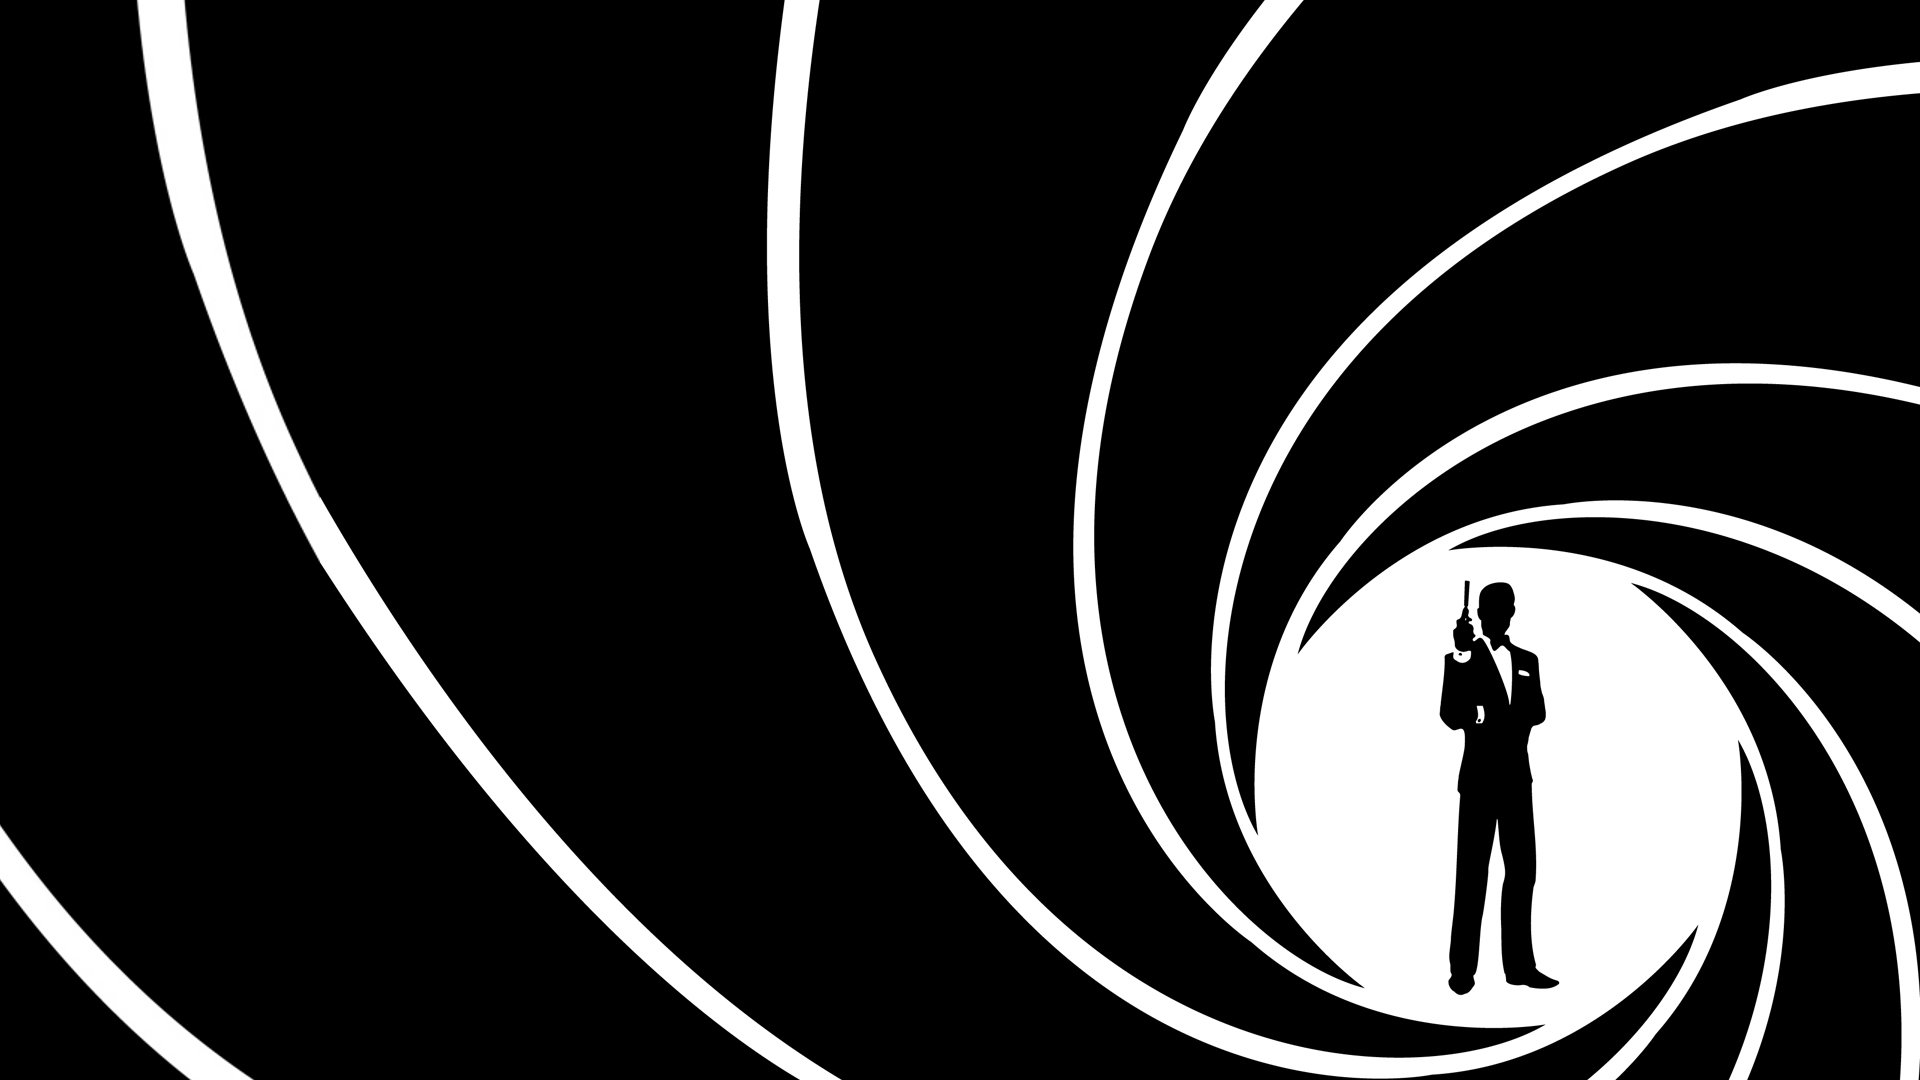 Bond James Action Spy Crime Thriller Mystery 1spectre Wallpaper